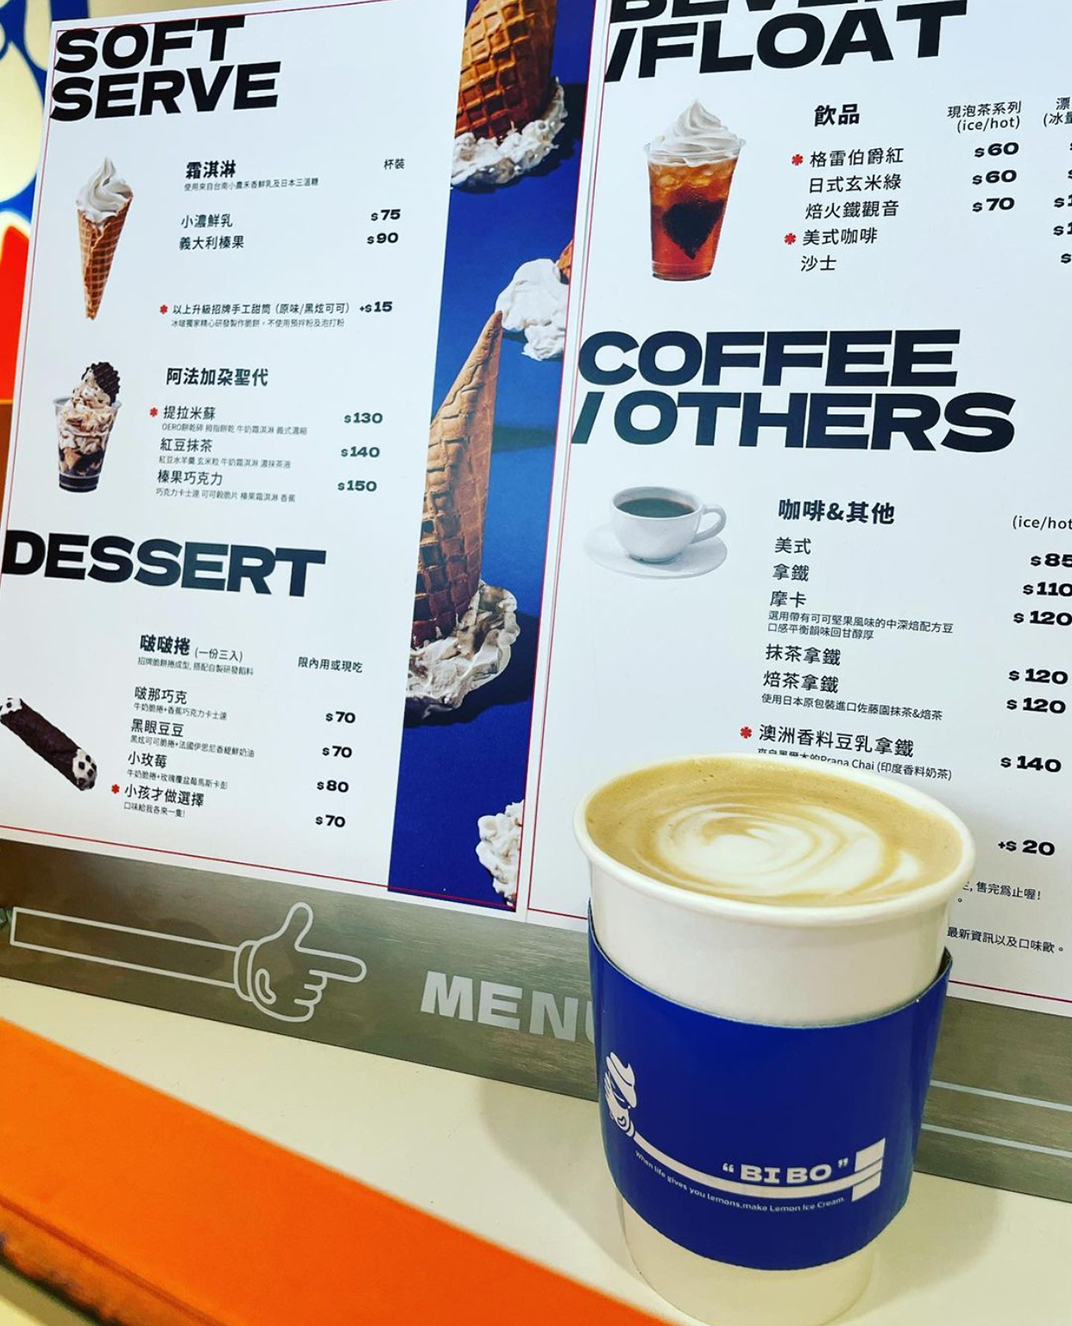 冰淇淋店冰啵Discone 台湾 上海 杭州 成都 甜品店 冰淇淋 蓝色 橙色 小白砖 logo设计 vi设计 空间设计